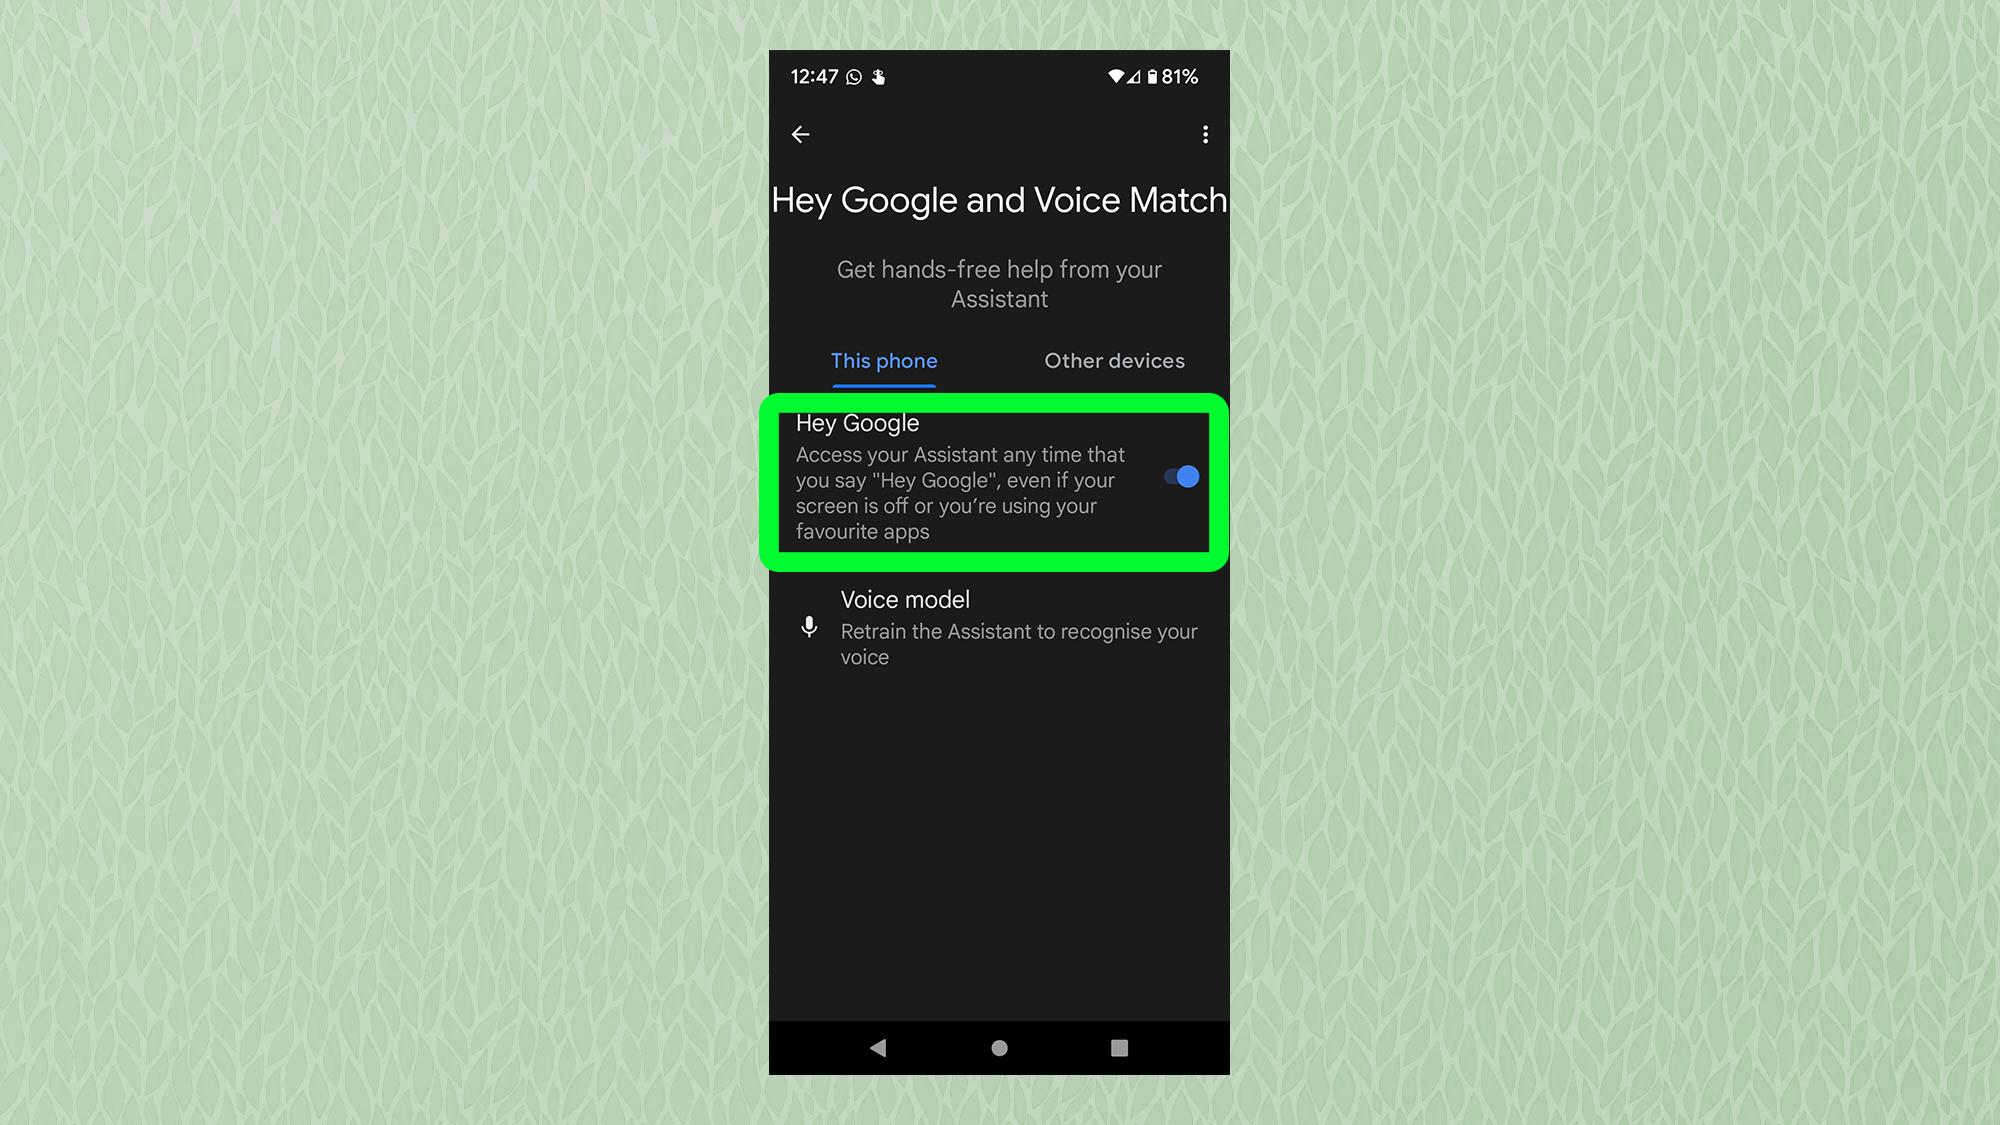 Снимок экрана с Android, показывающий меню Hey Google и Voice Match с выделенным Hey Google